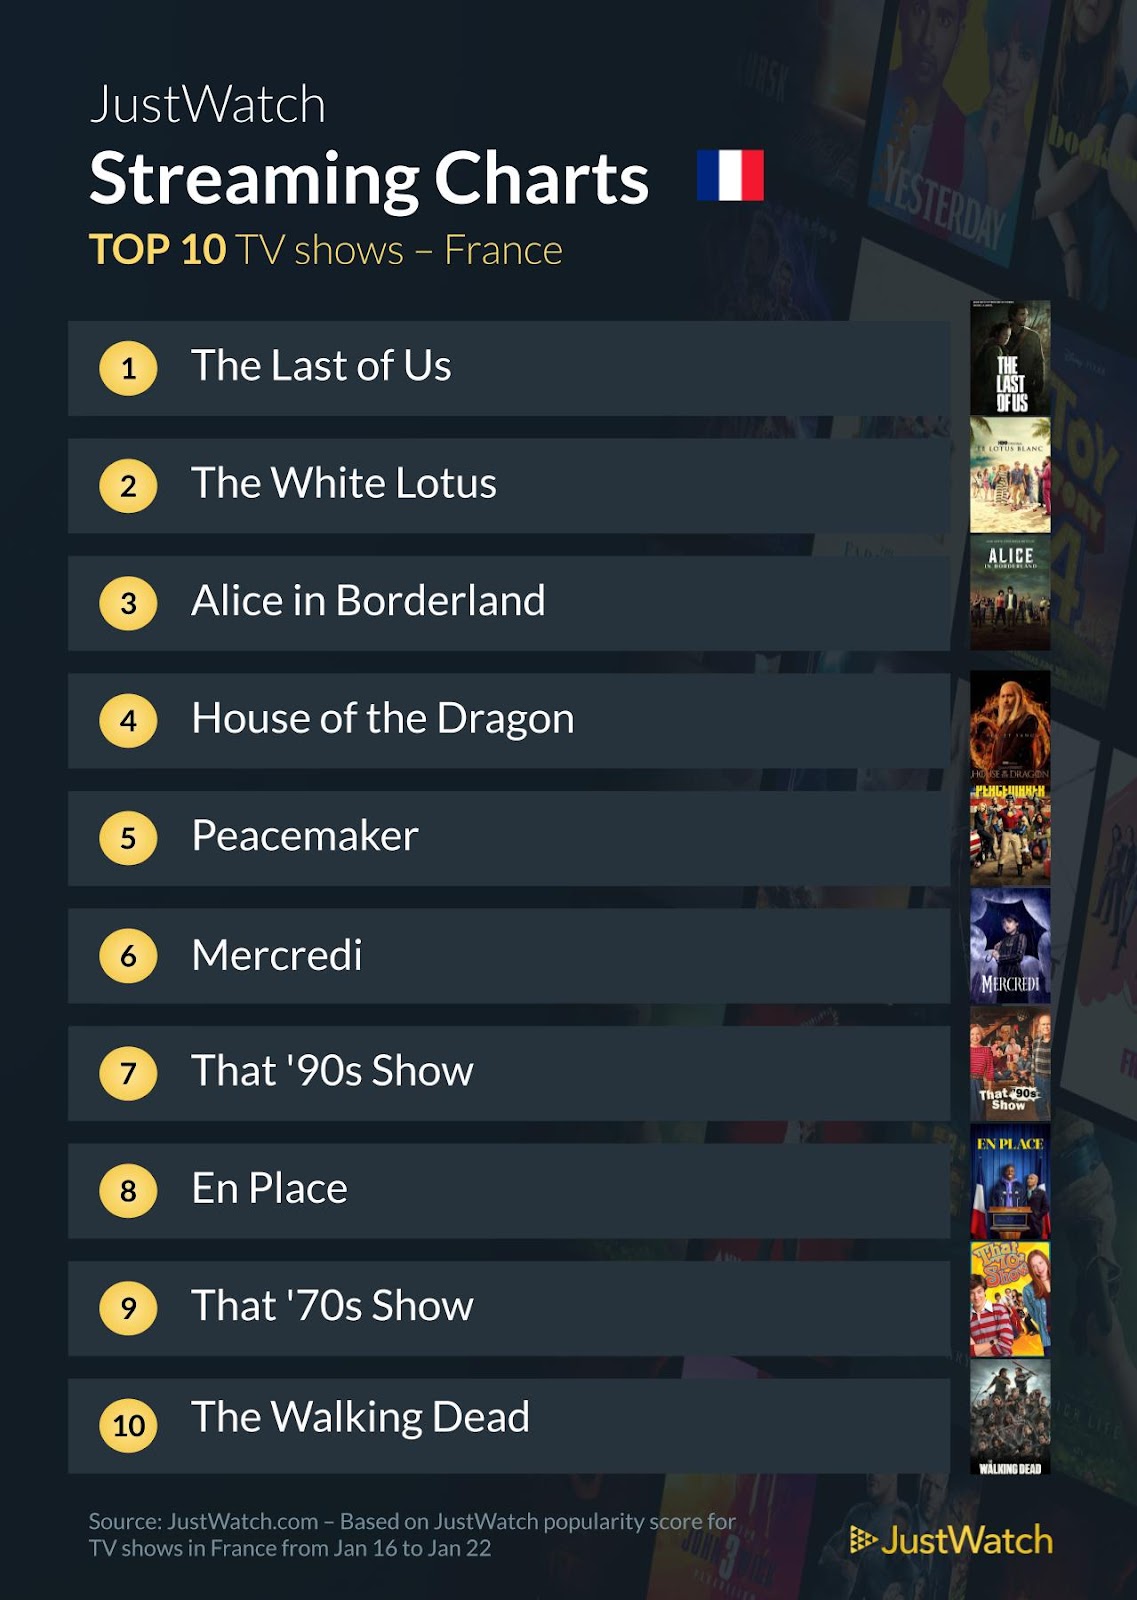 Le top streaming cinéma / séries : "JUNG_E" et "The Last Of Us" au top cette semaine !